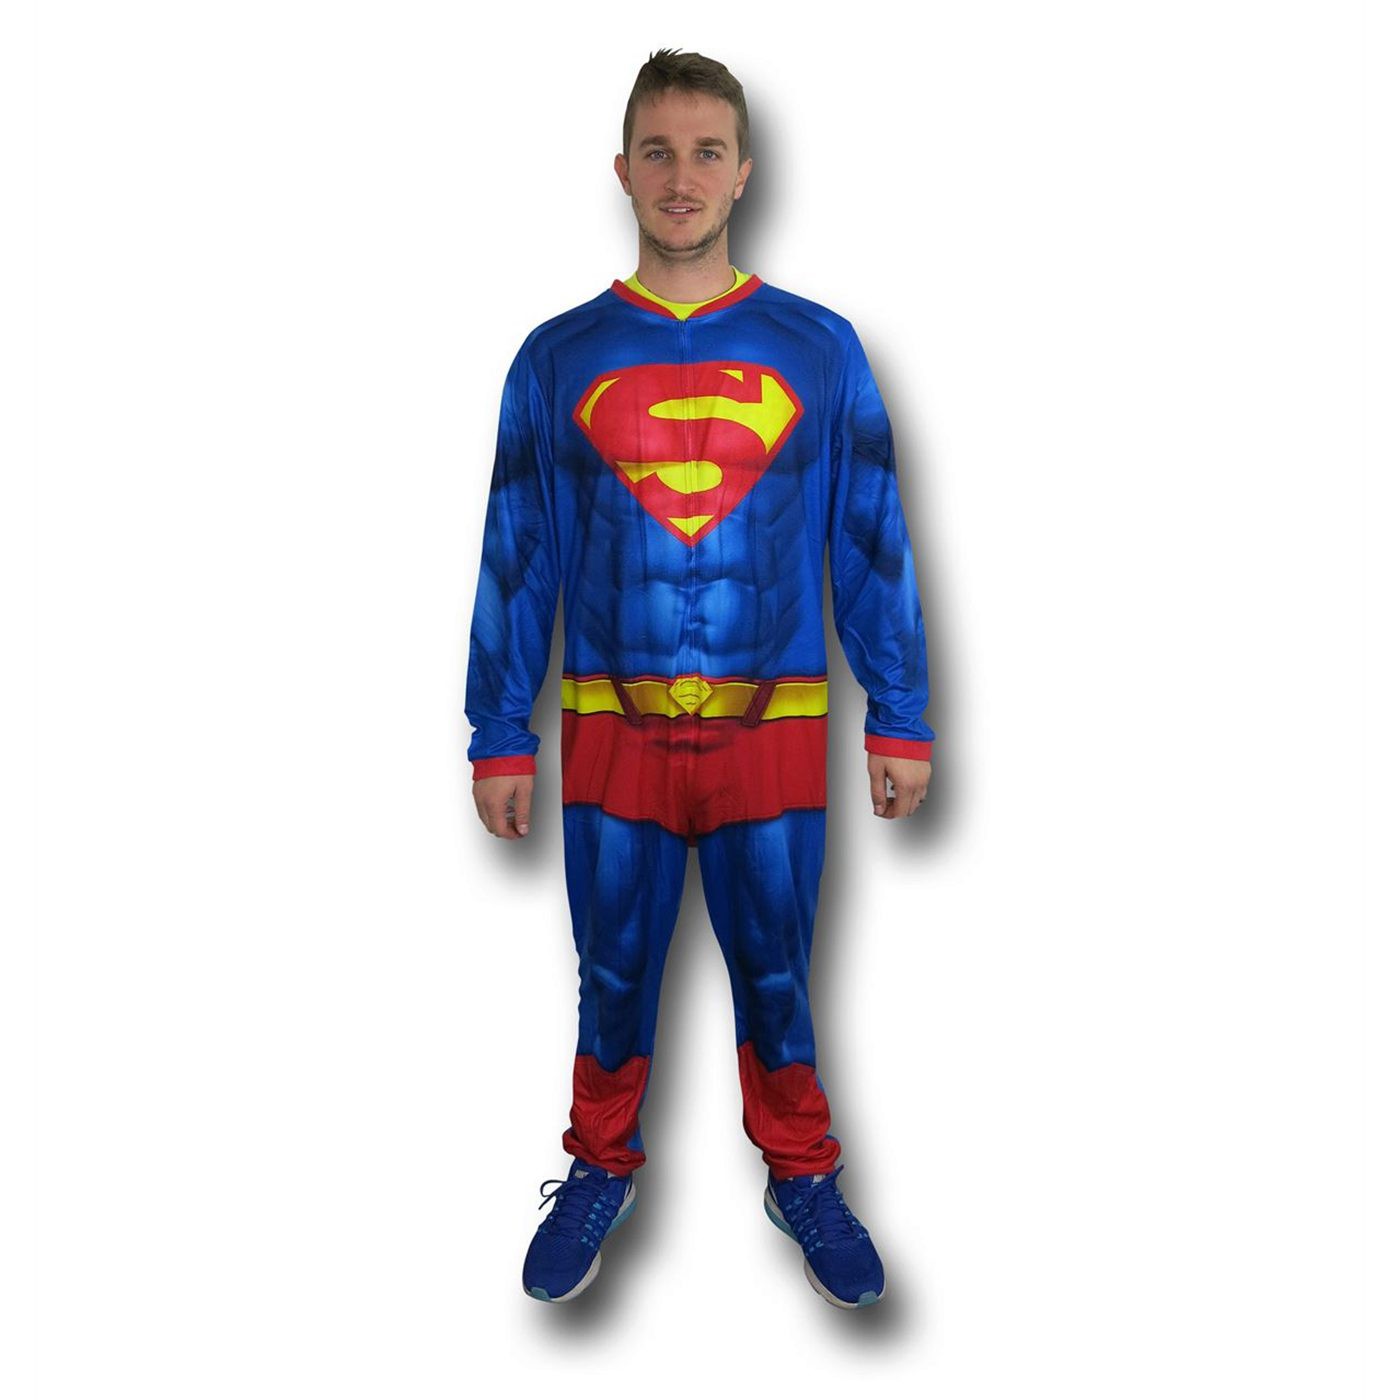 Superman Big Shield Sublimated Union Suit